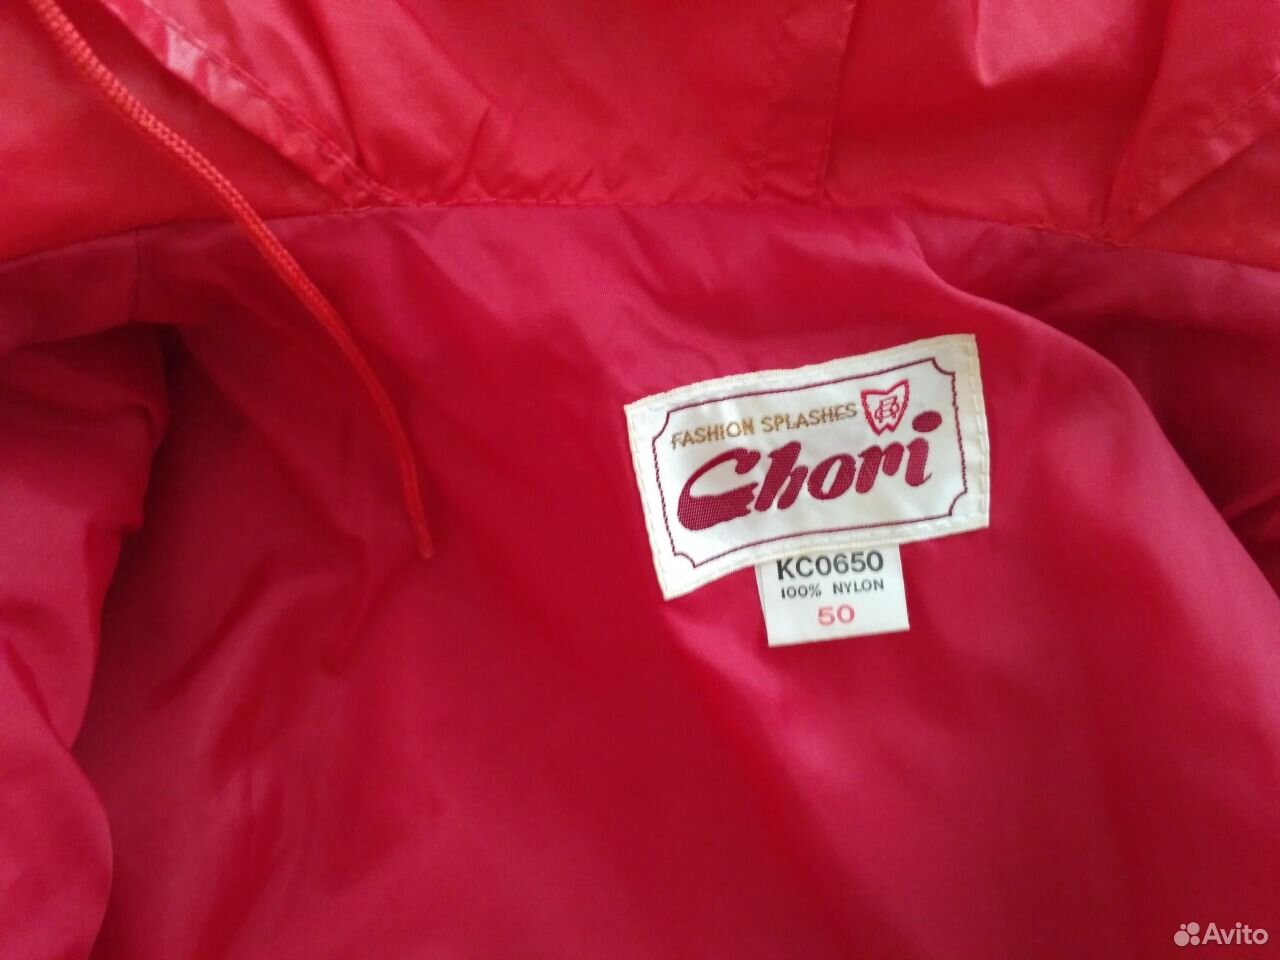 Куртка Chori